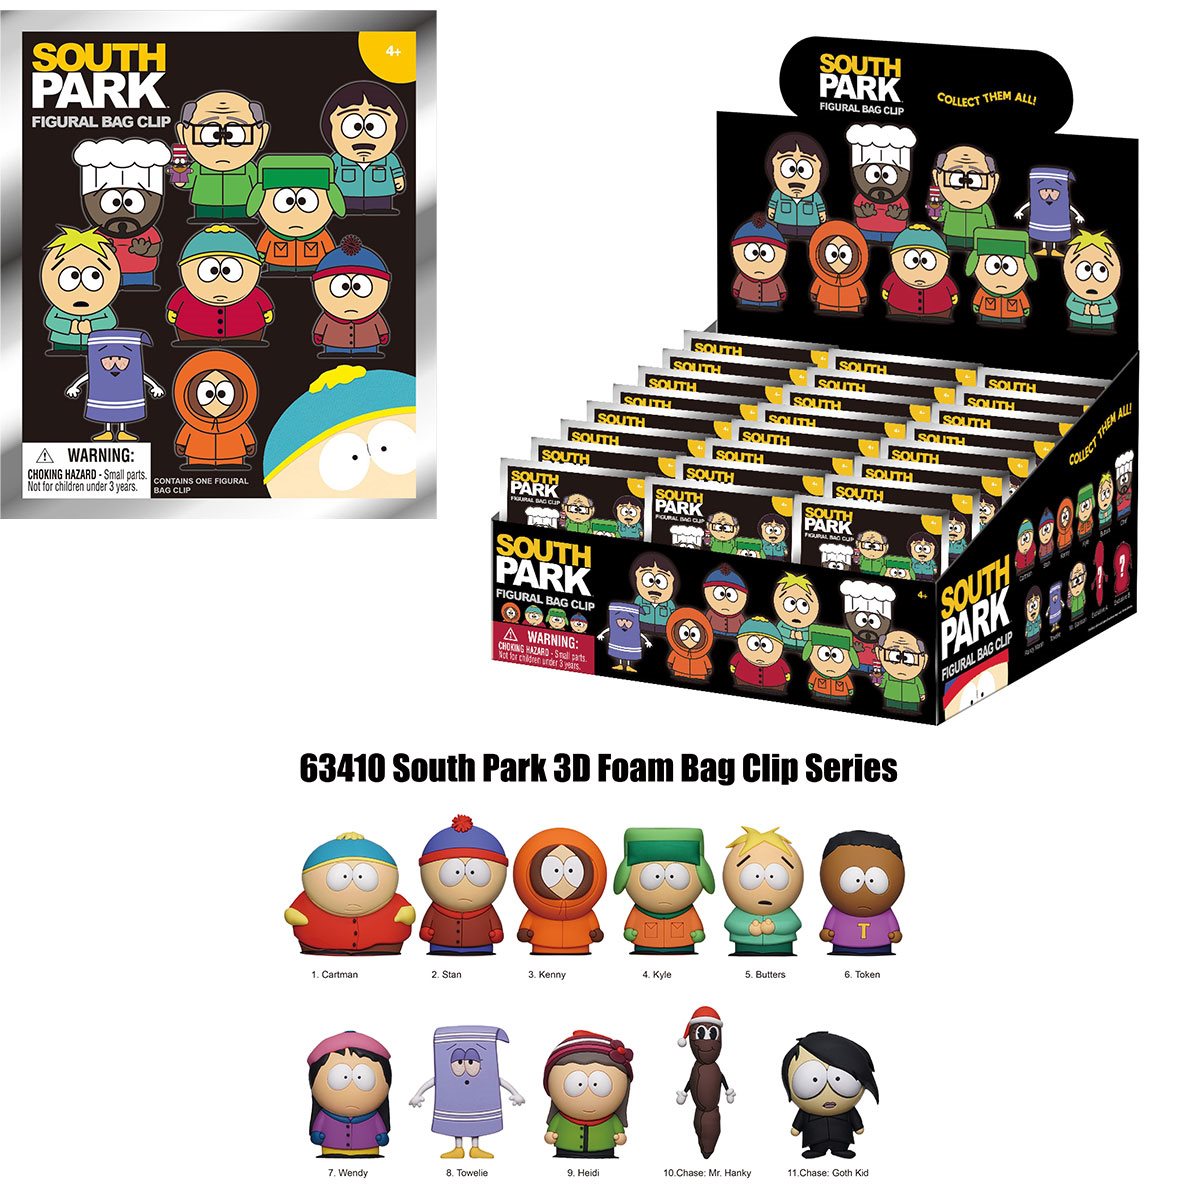 新商品🆕バッグクリップ付きのフィギュア(キーホルダー)

South Park 3D Foam Bag Clip Display Case of 24(Figural Bag Clip)
South Park Monogram Key Chains
entertainmentearth.com/product/south-…

ブラインドパックだから目当てのキャラ引き当てるの大変そうだけど、サブキャラも多くていいね♡